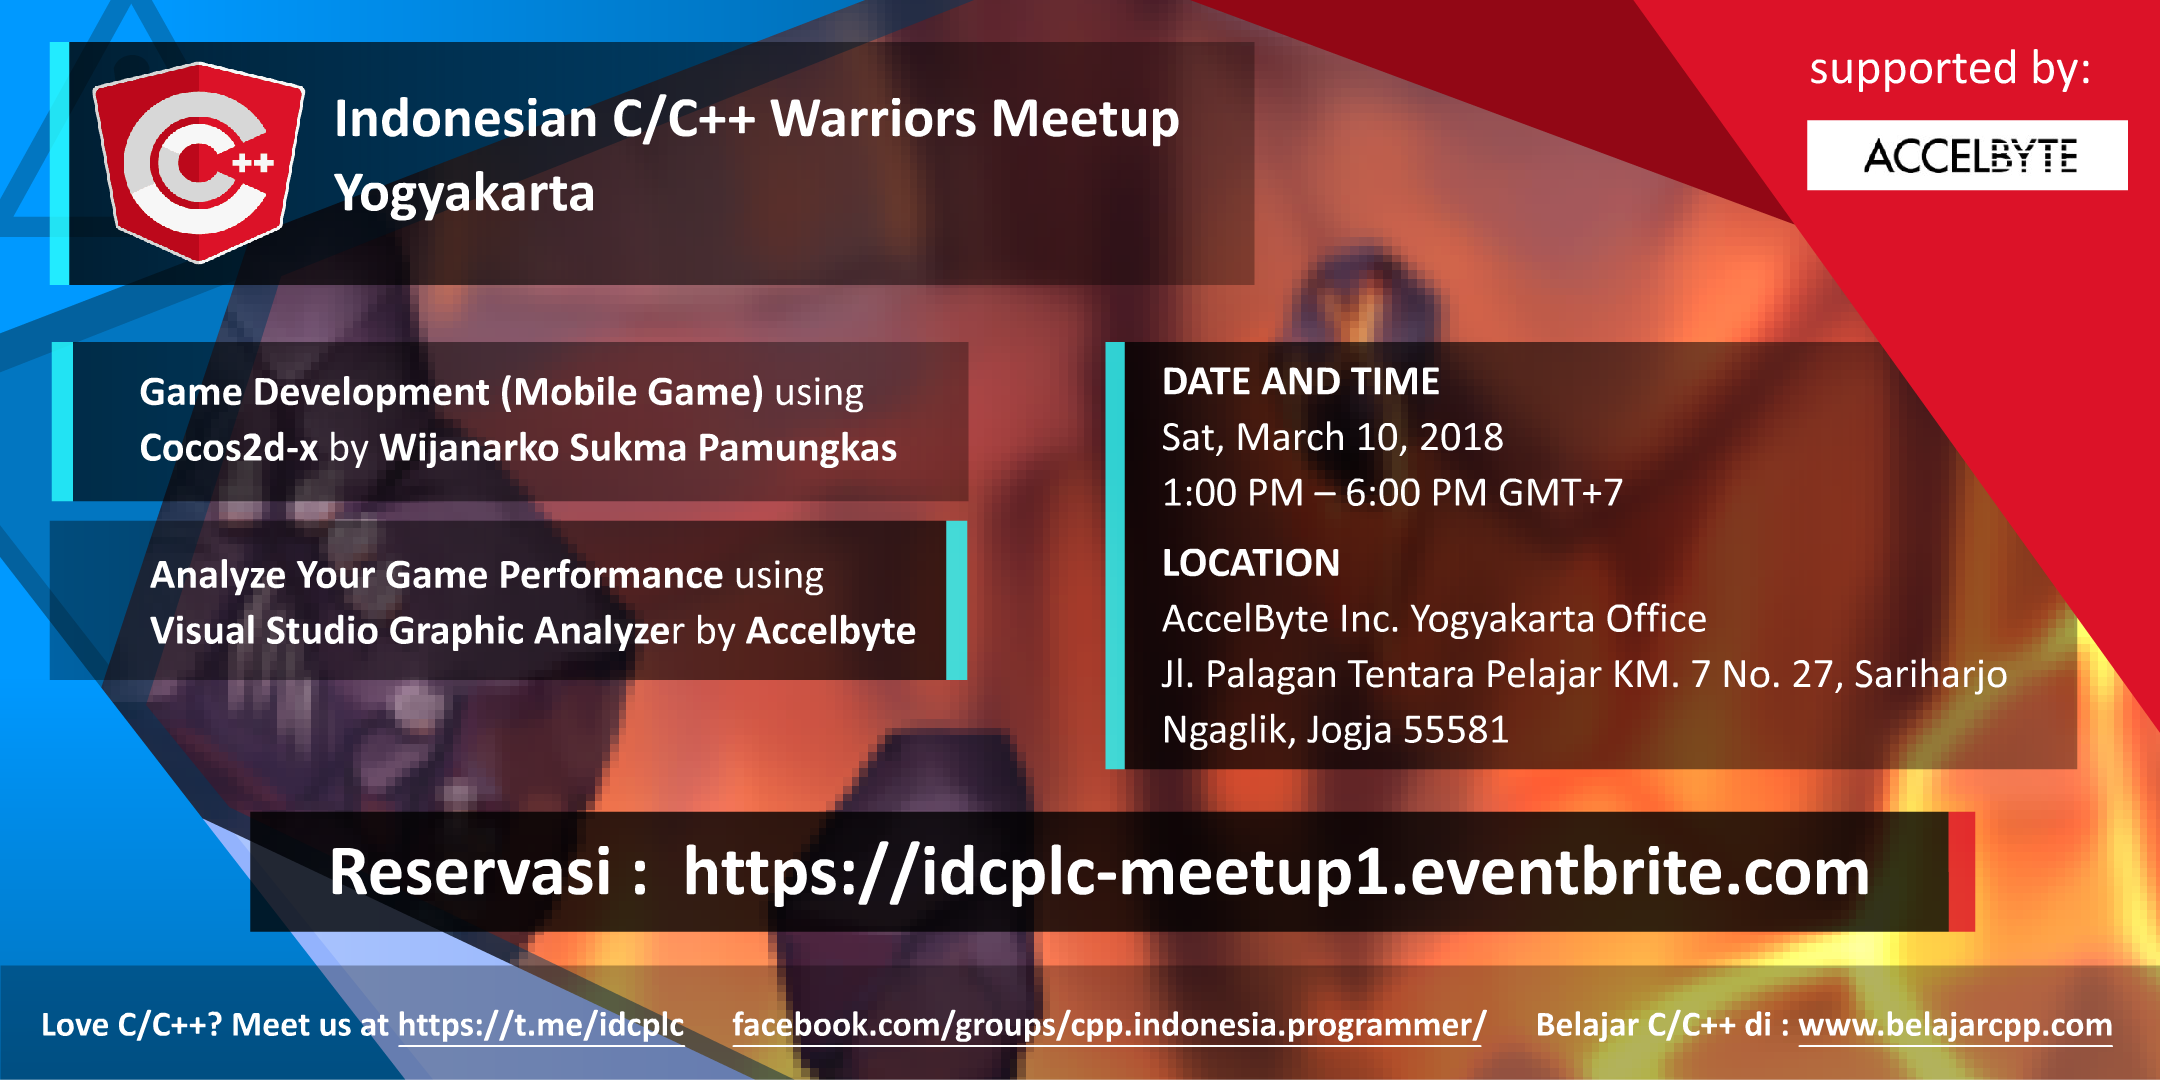 Indonesian C/C++ Warriors Meetup Yogyakarta March 10, 2018